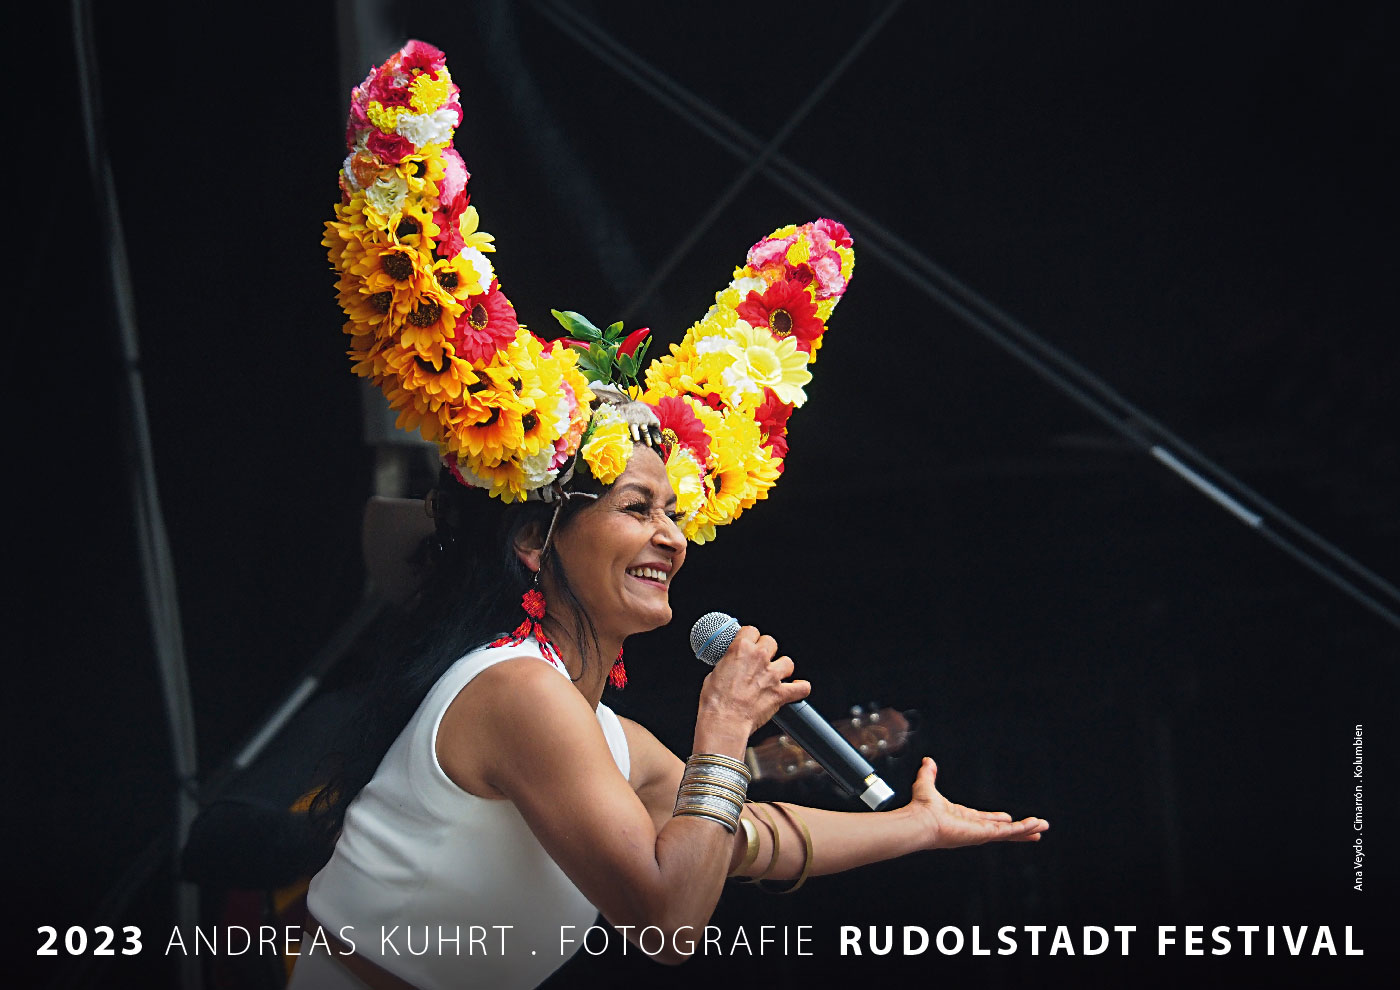 Fotokalender 2023: Rudolstadt Festival: Deckblatt: Ana Veydo, Cimarrón, Kolumbien (Foto/Gestaltung: Andreas Kuhrt)